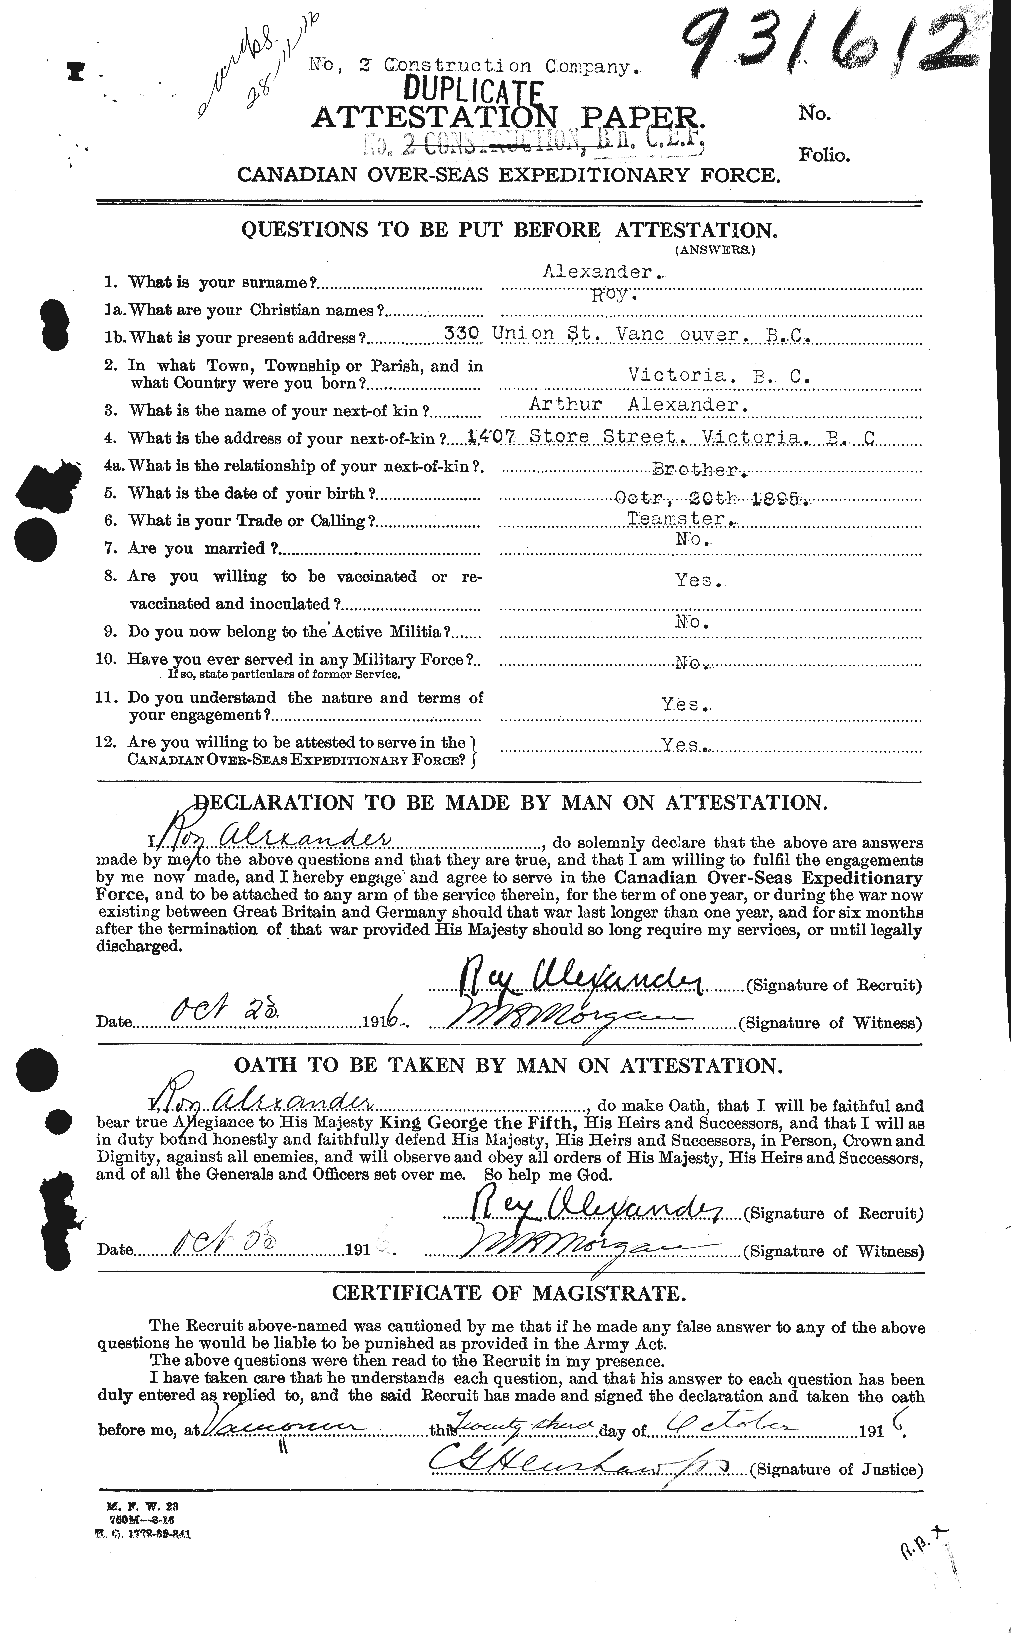 Dossiers du Personnel de la Première Guerre mondiale - CEC 204350a